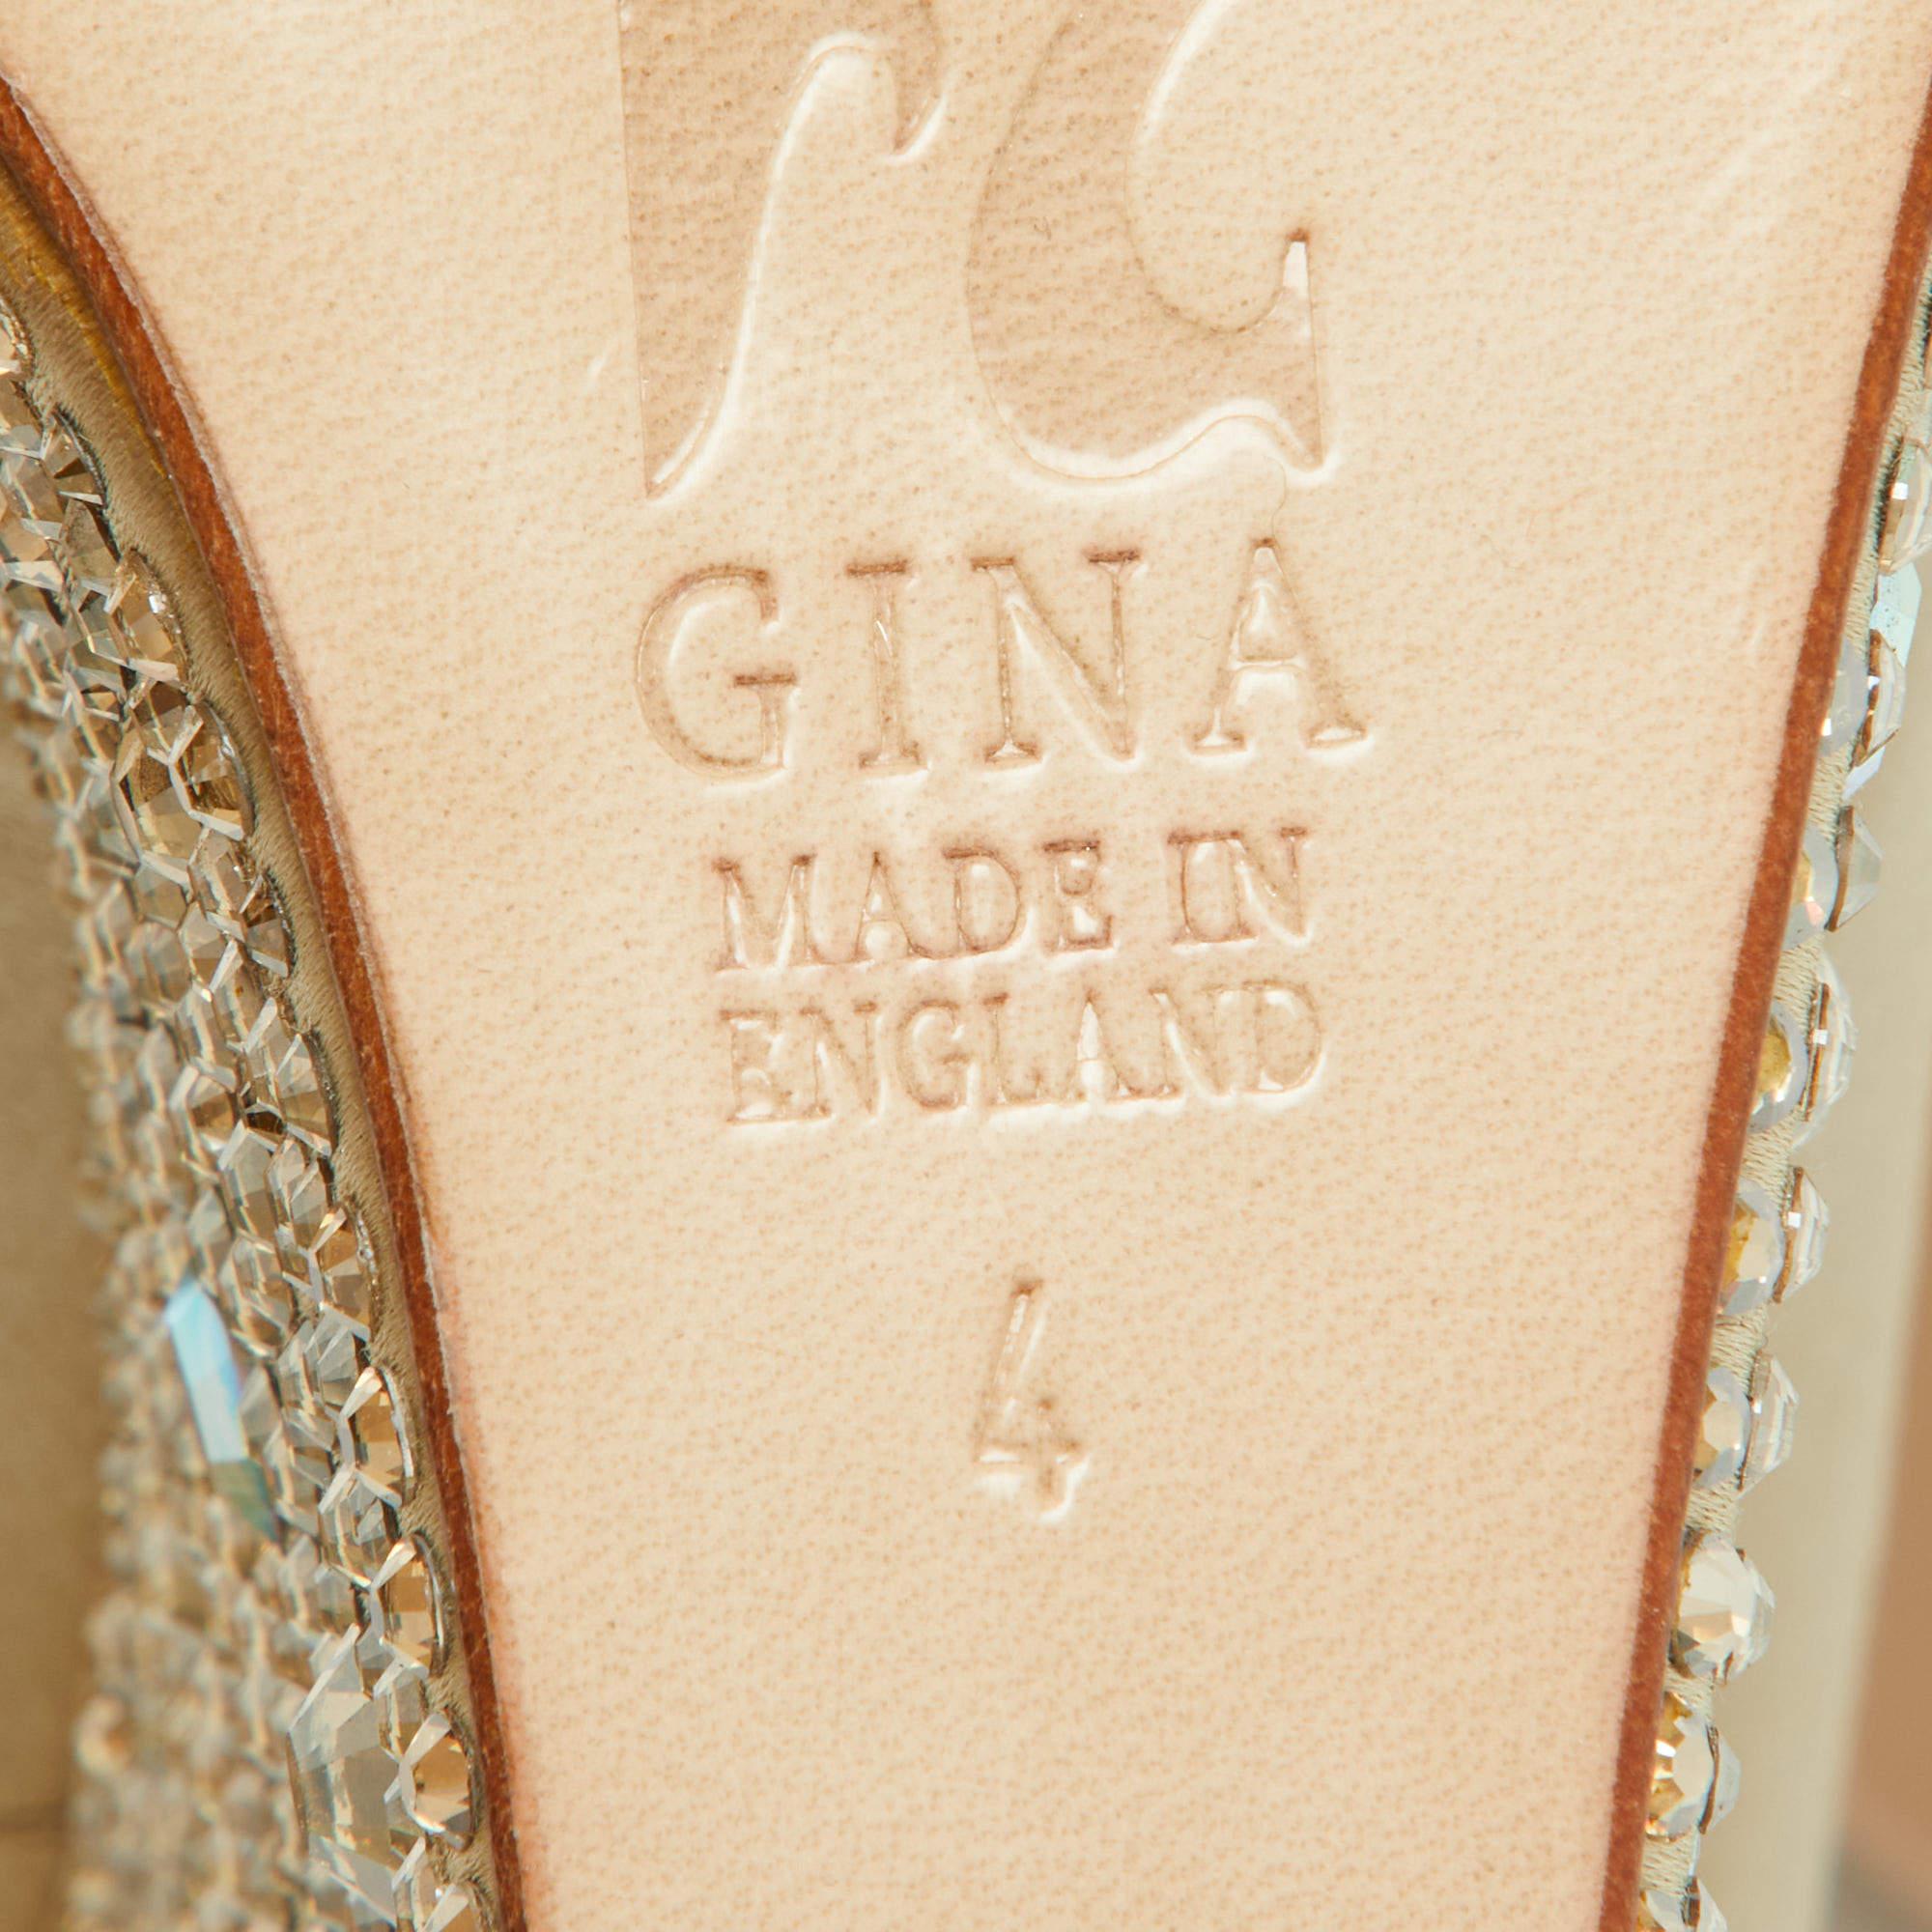 Gina Beige Crystal Embellished Satin Belle Open Toe Wedge Pumps Size 37 For Sale 2